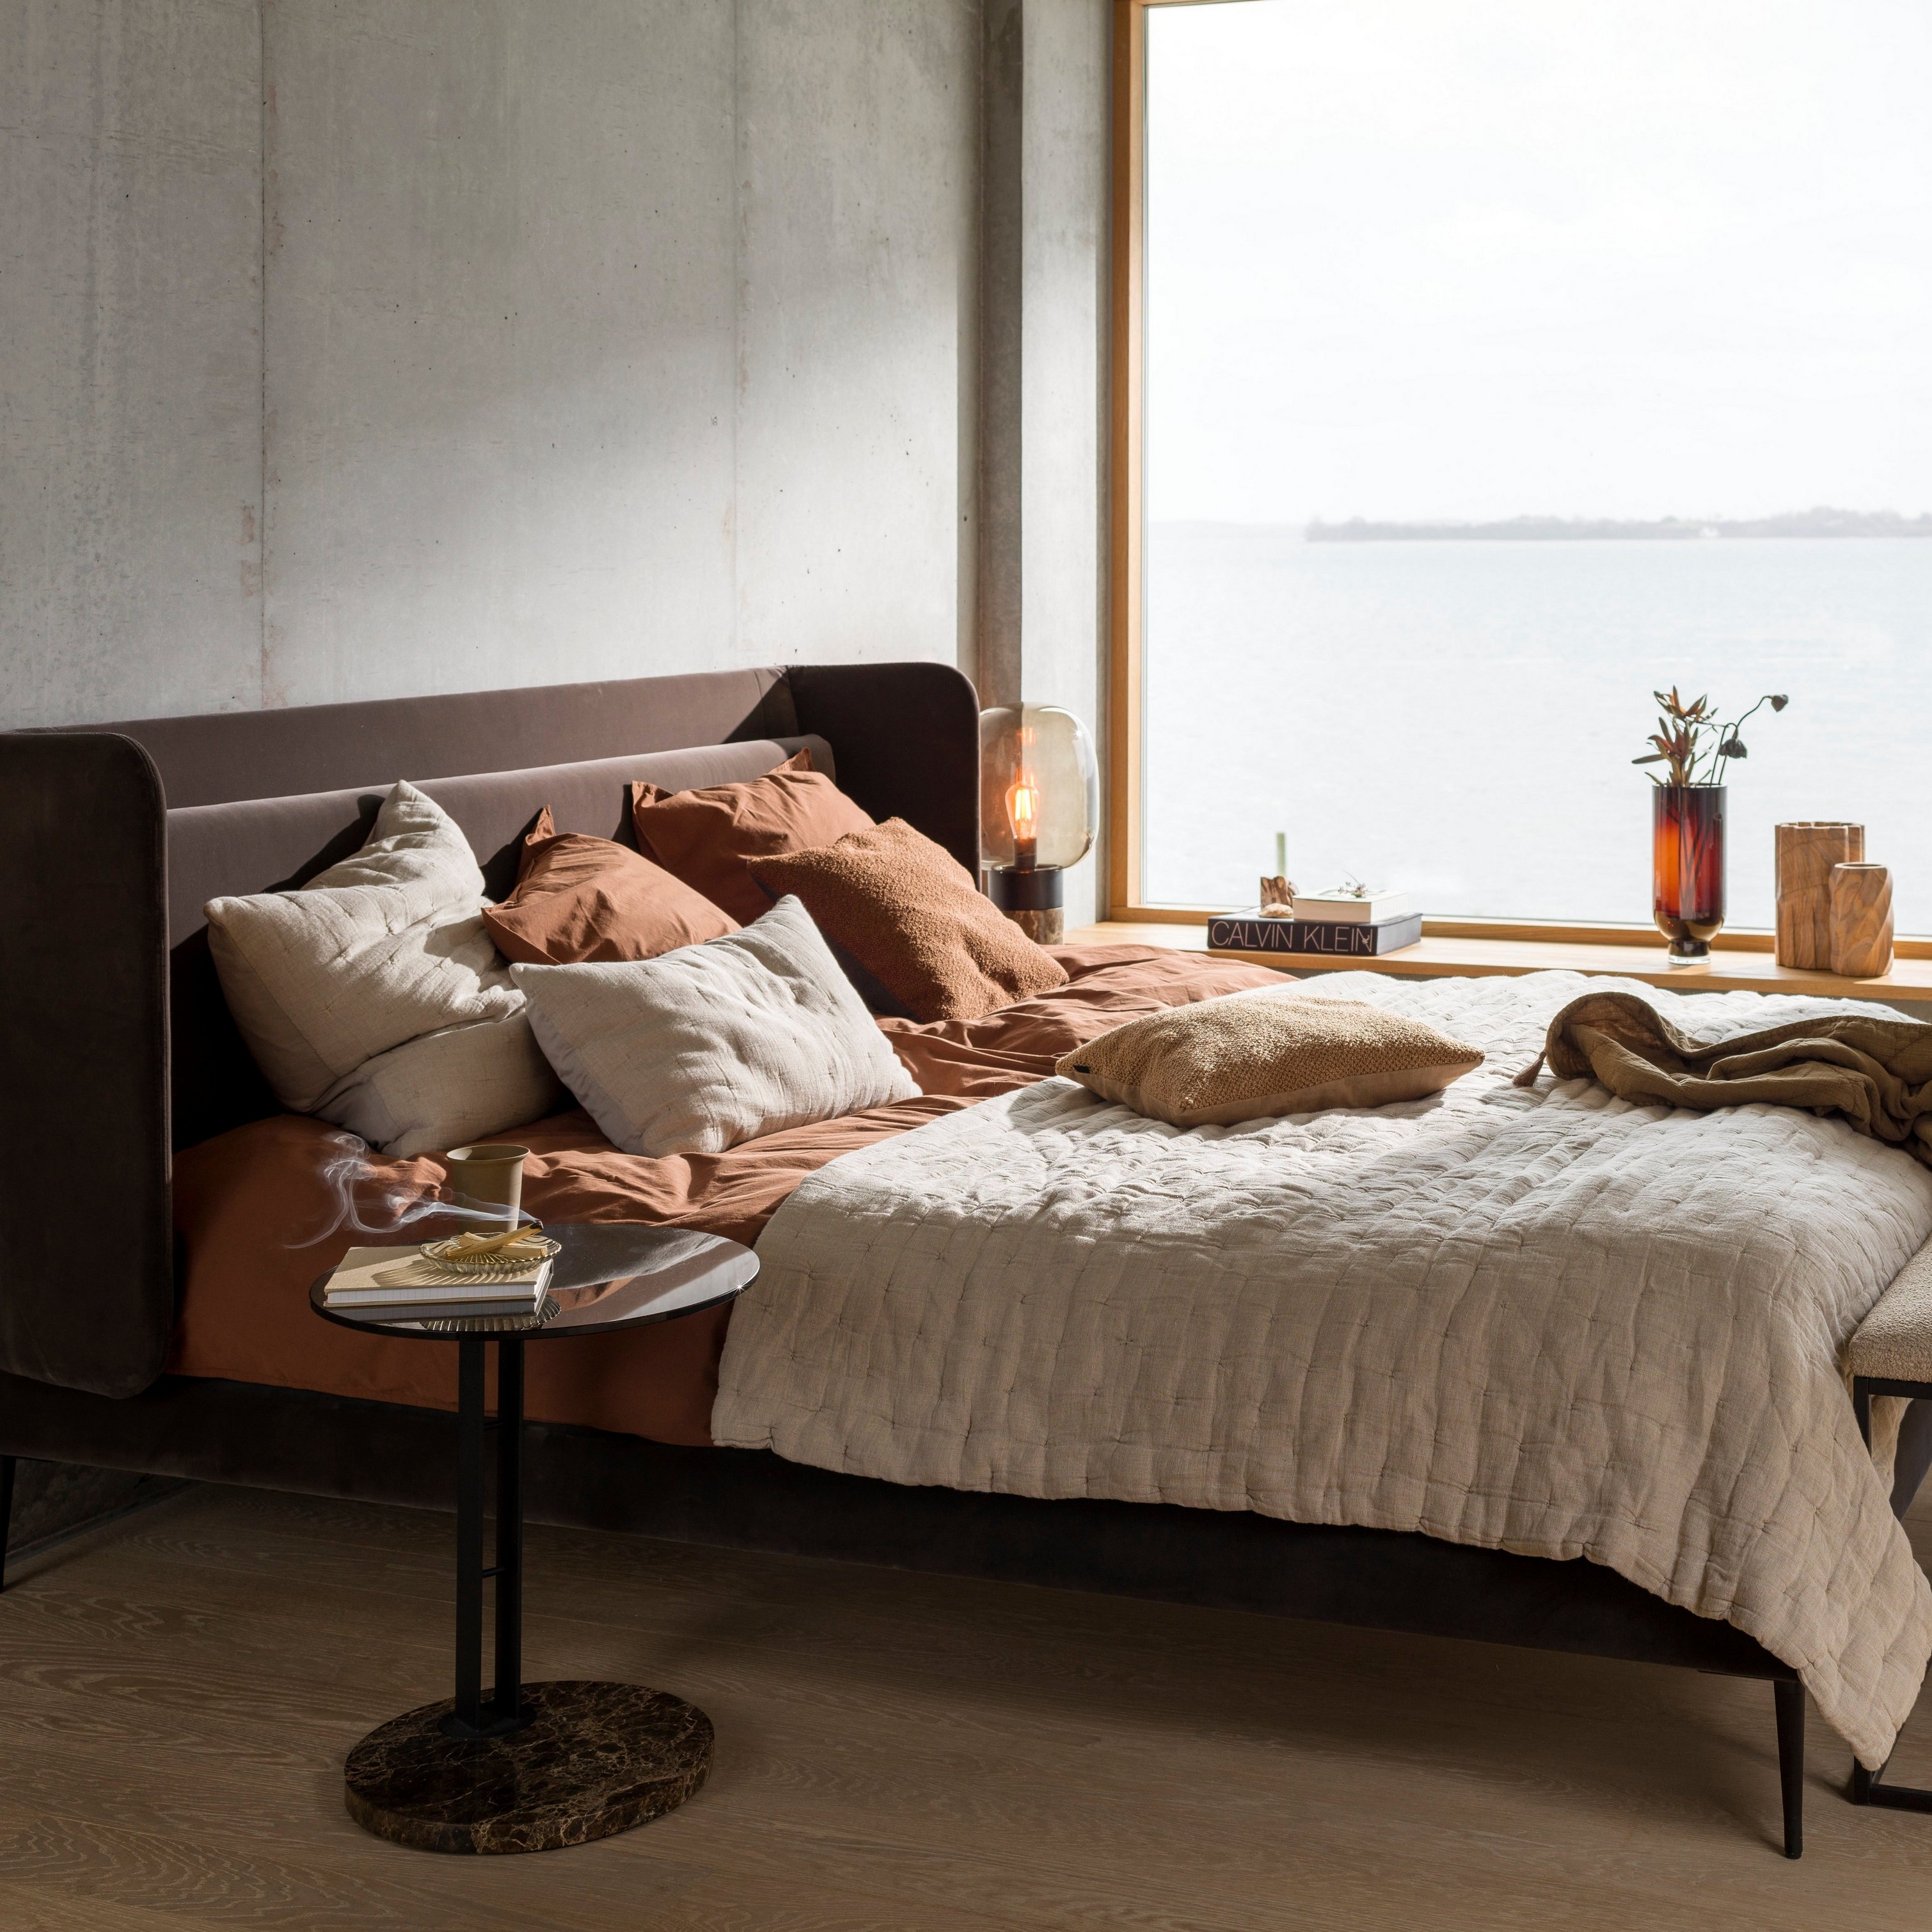 Chambre confortable avec vue sur l’eau, avec linge de lit aux tons terreux et une petite table de chevet.